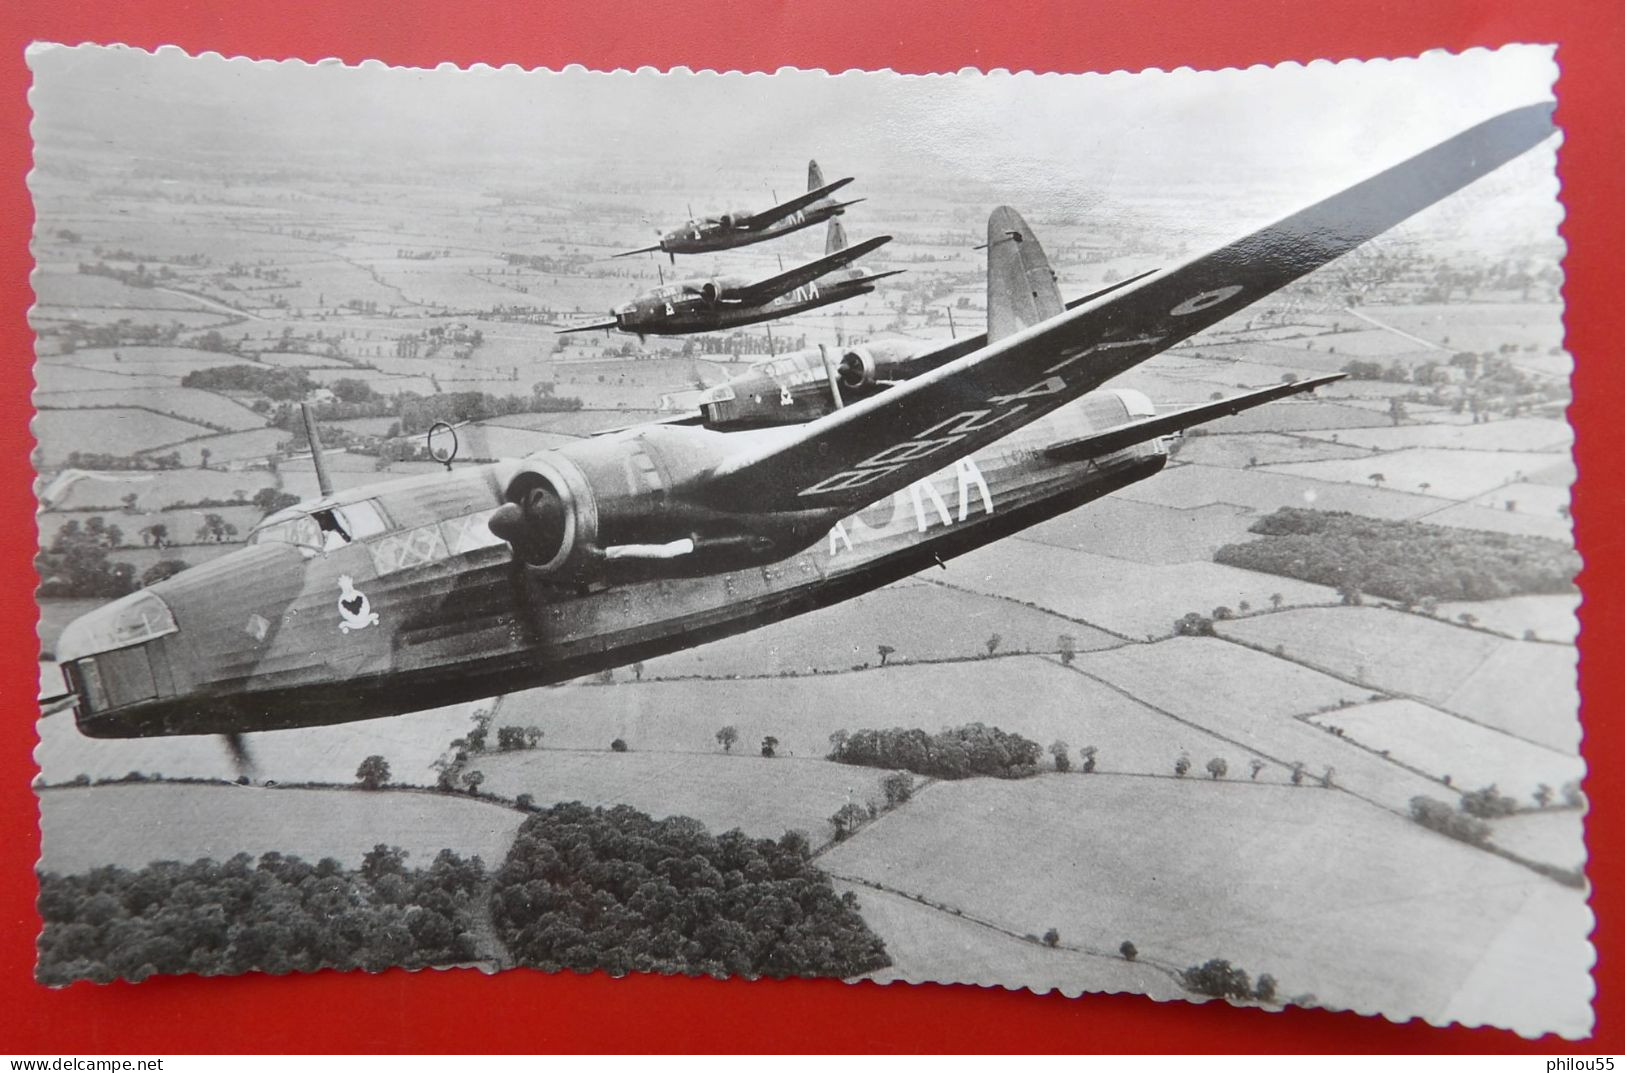 Cpsm Avion RAF - 1939-1945: 2ème Guerre